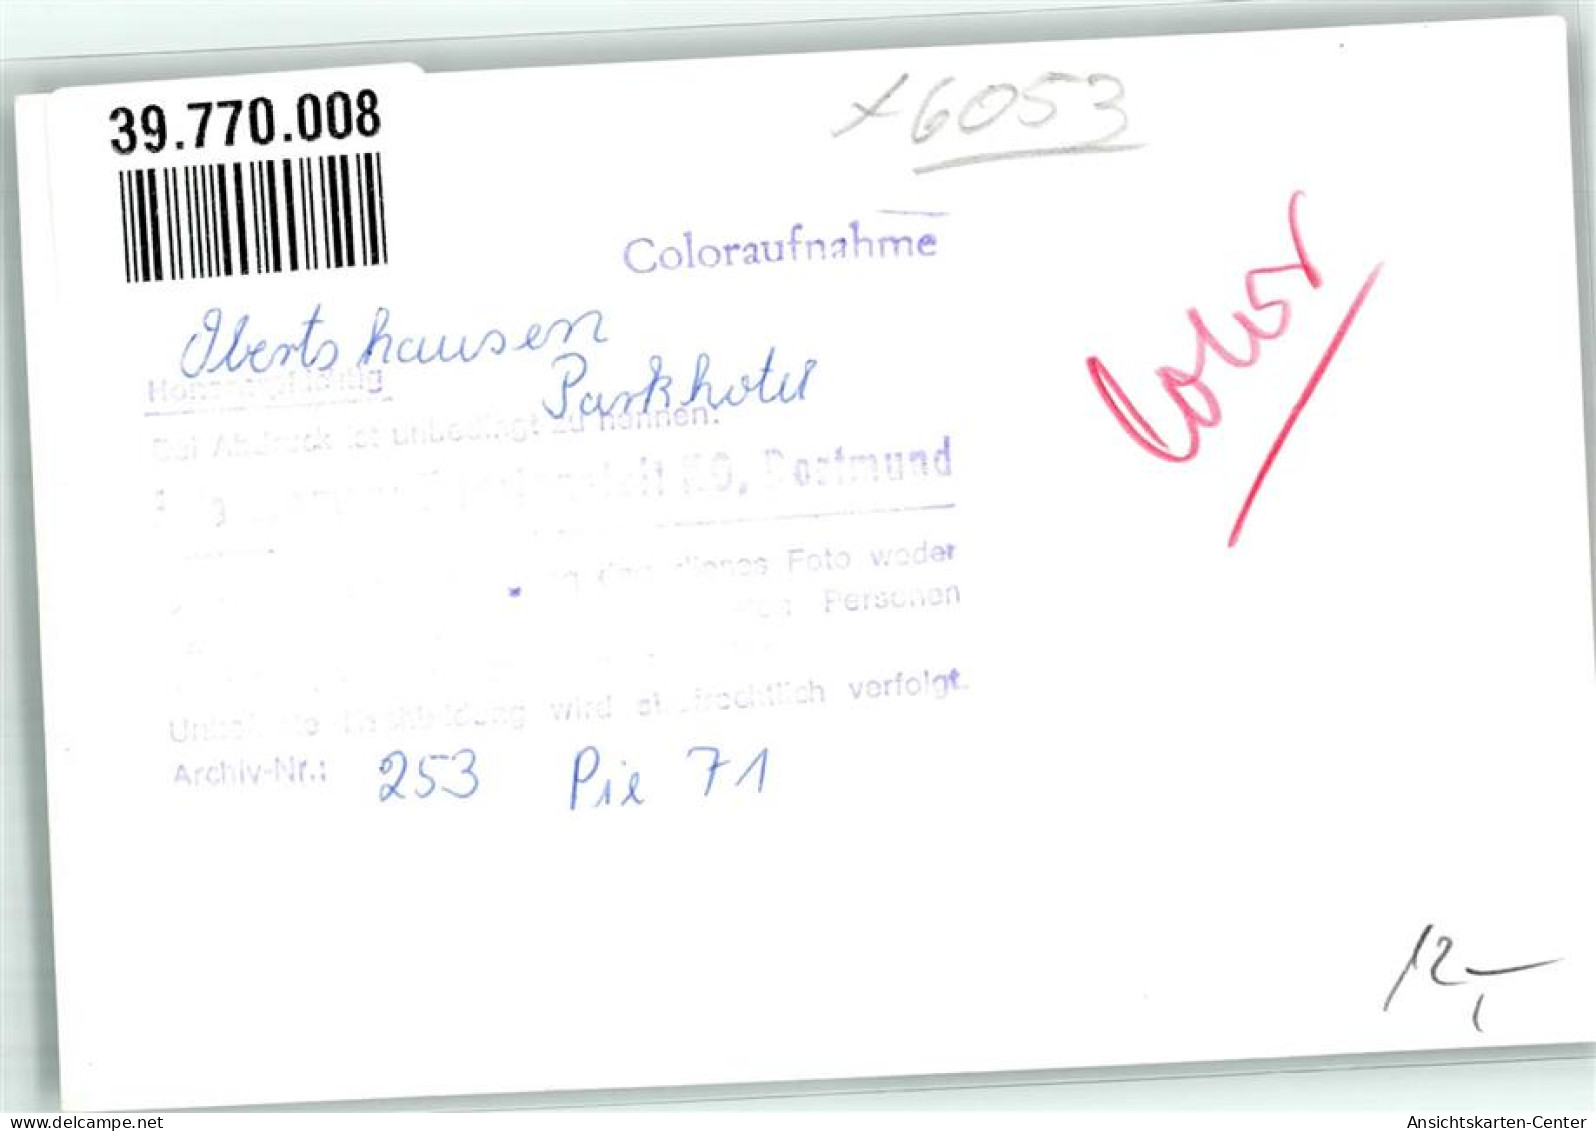 39770008 - Obertshausen - Obertshausen